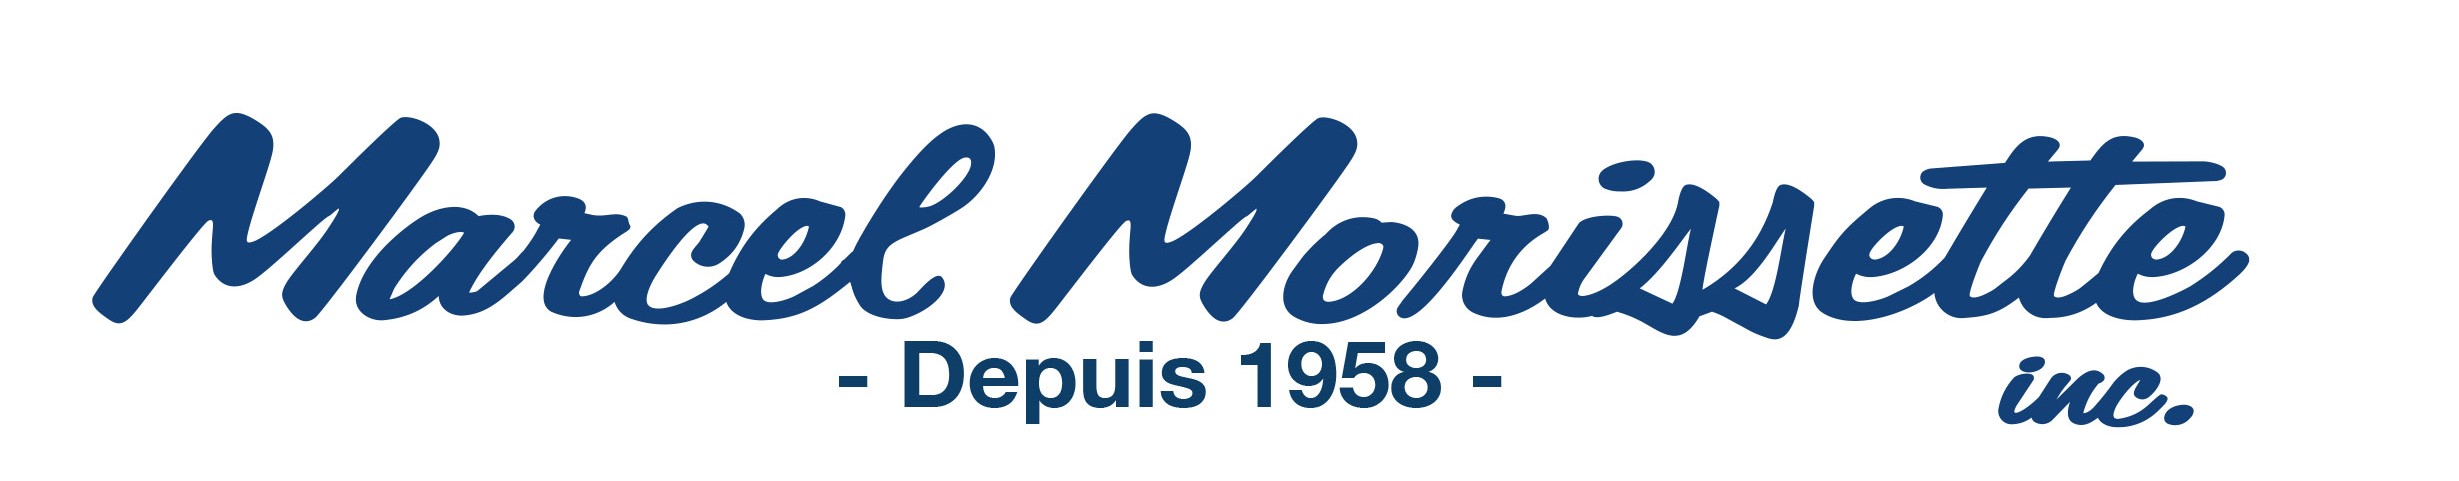 logo_MarcelMorissette